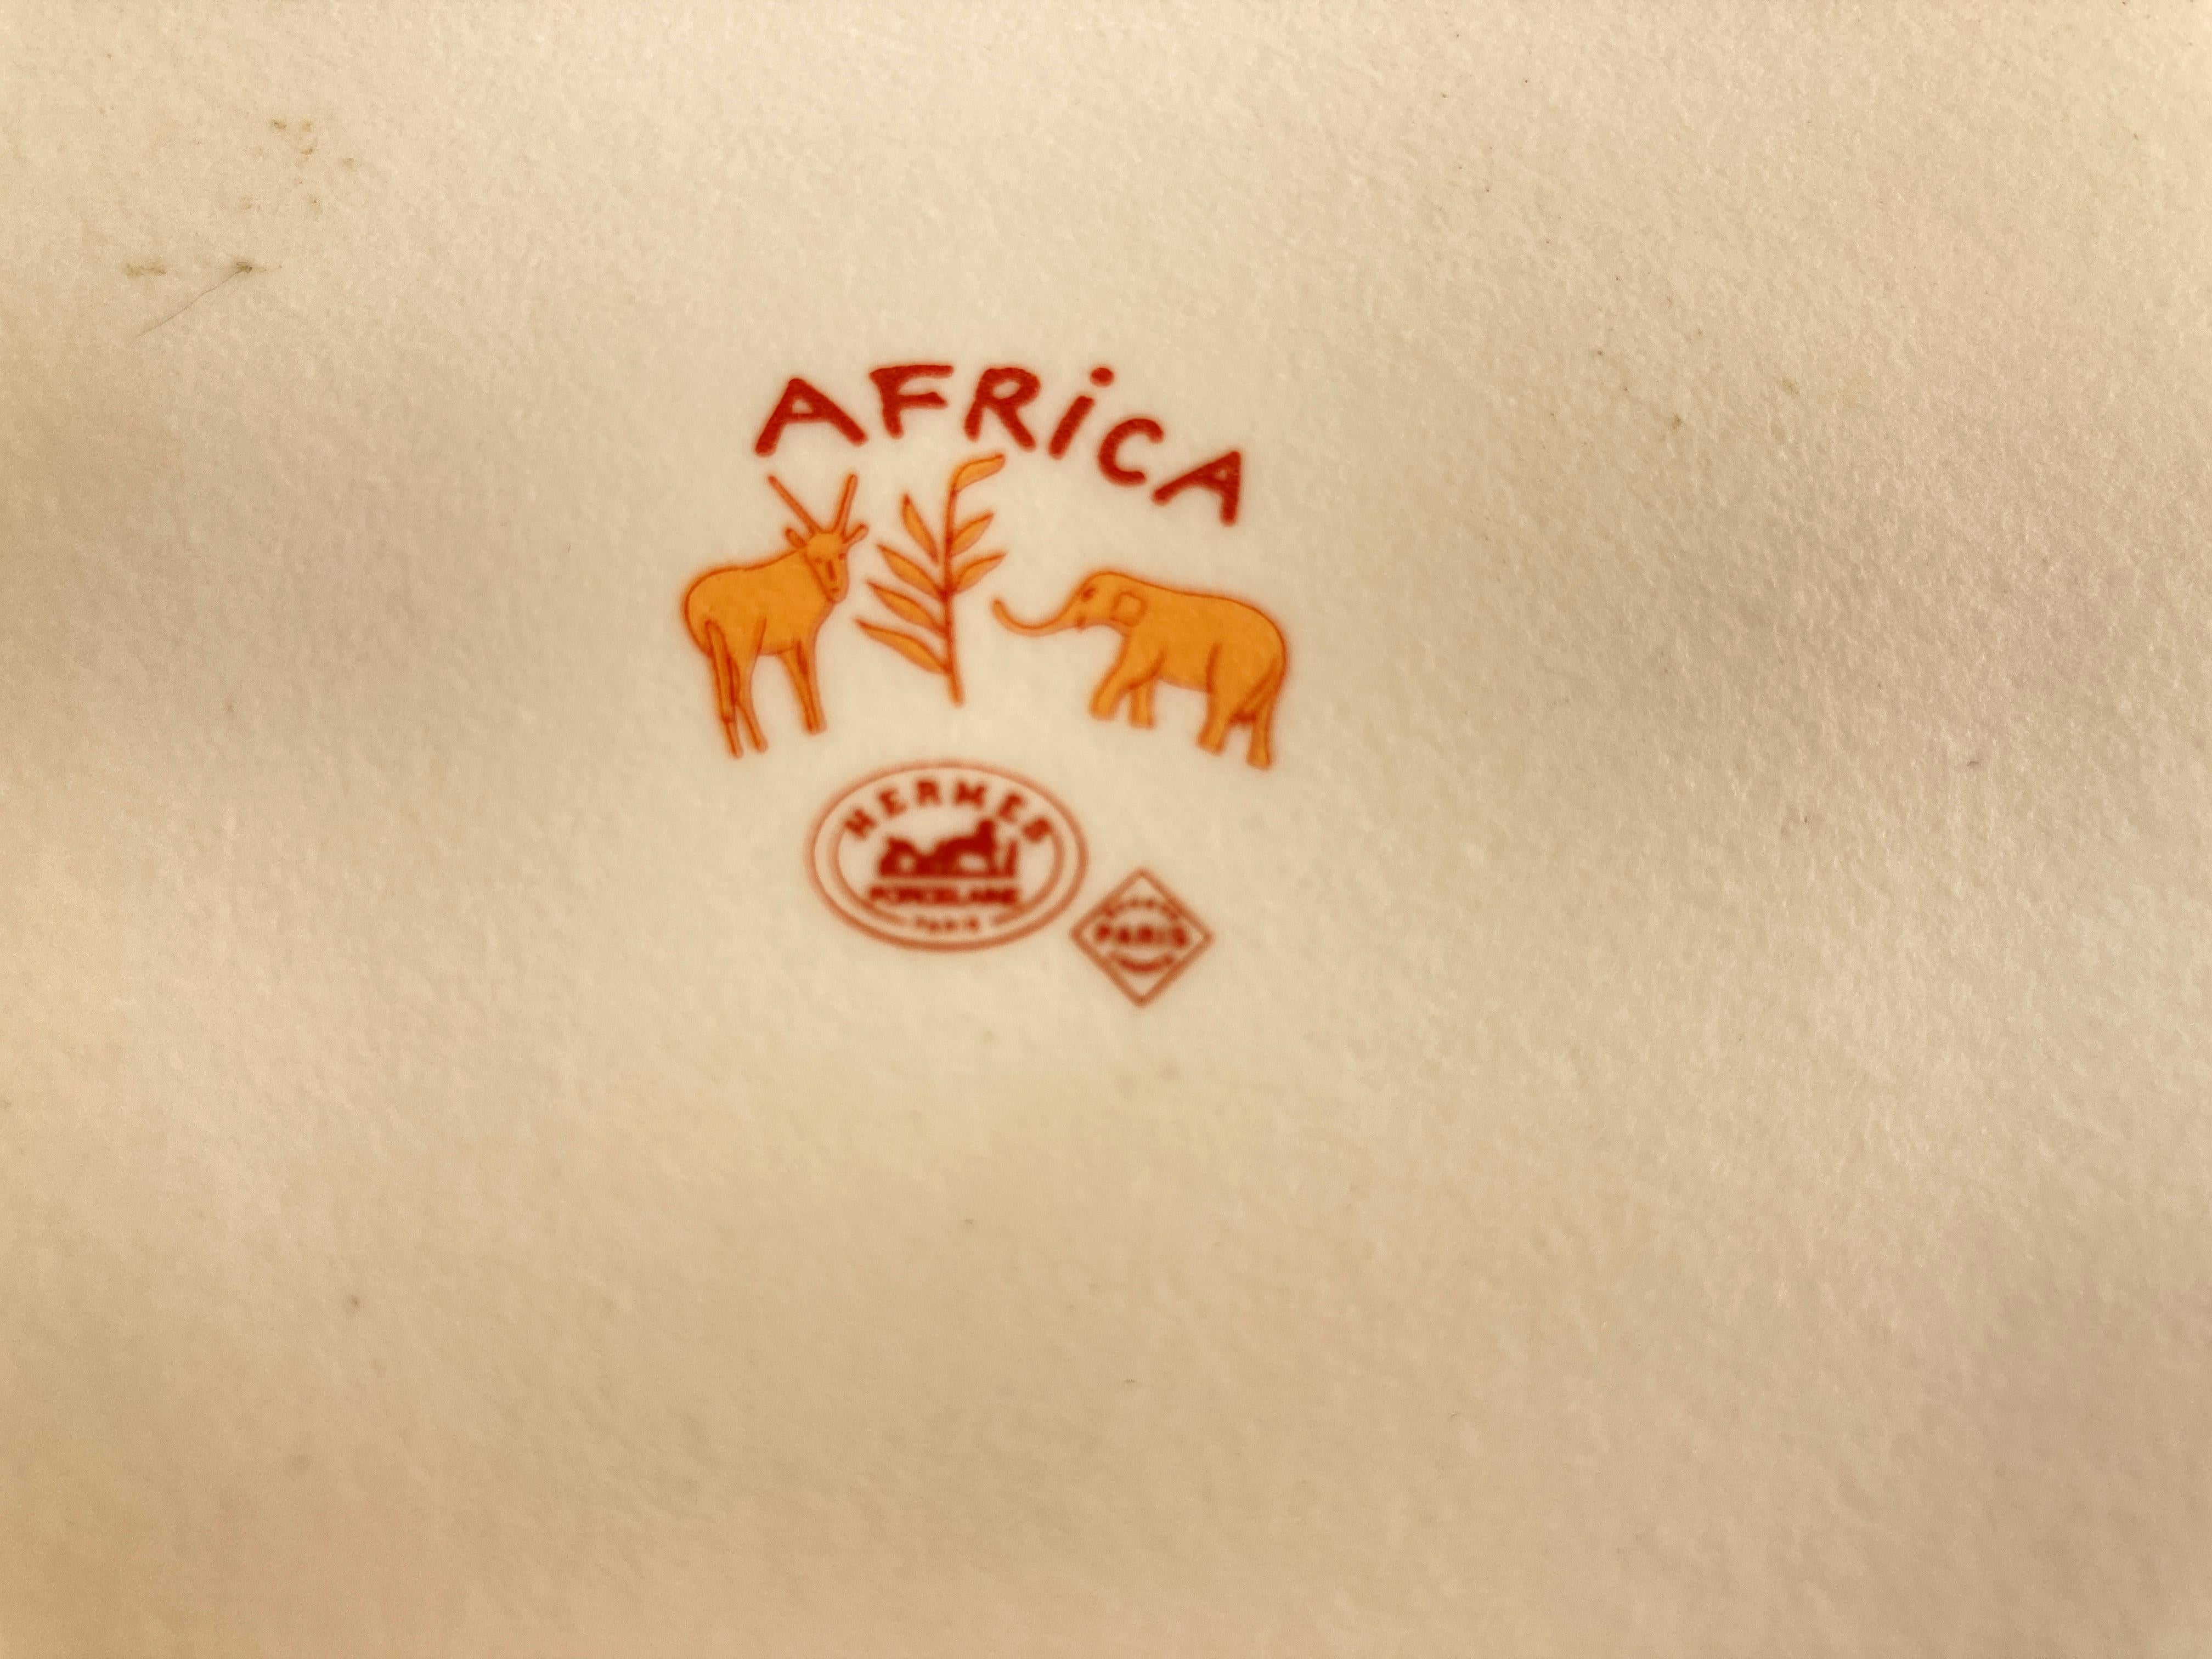 Hermes Porcelain Trinket Dish with Africa Orange Safari Design 7